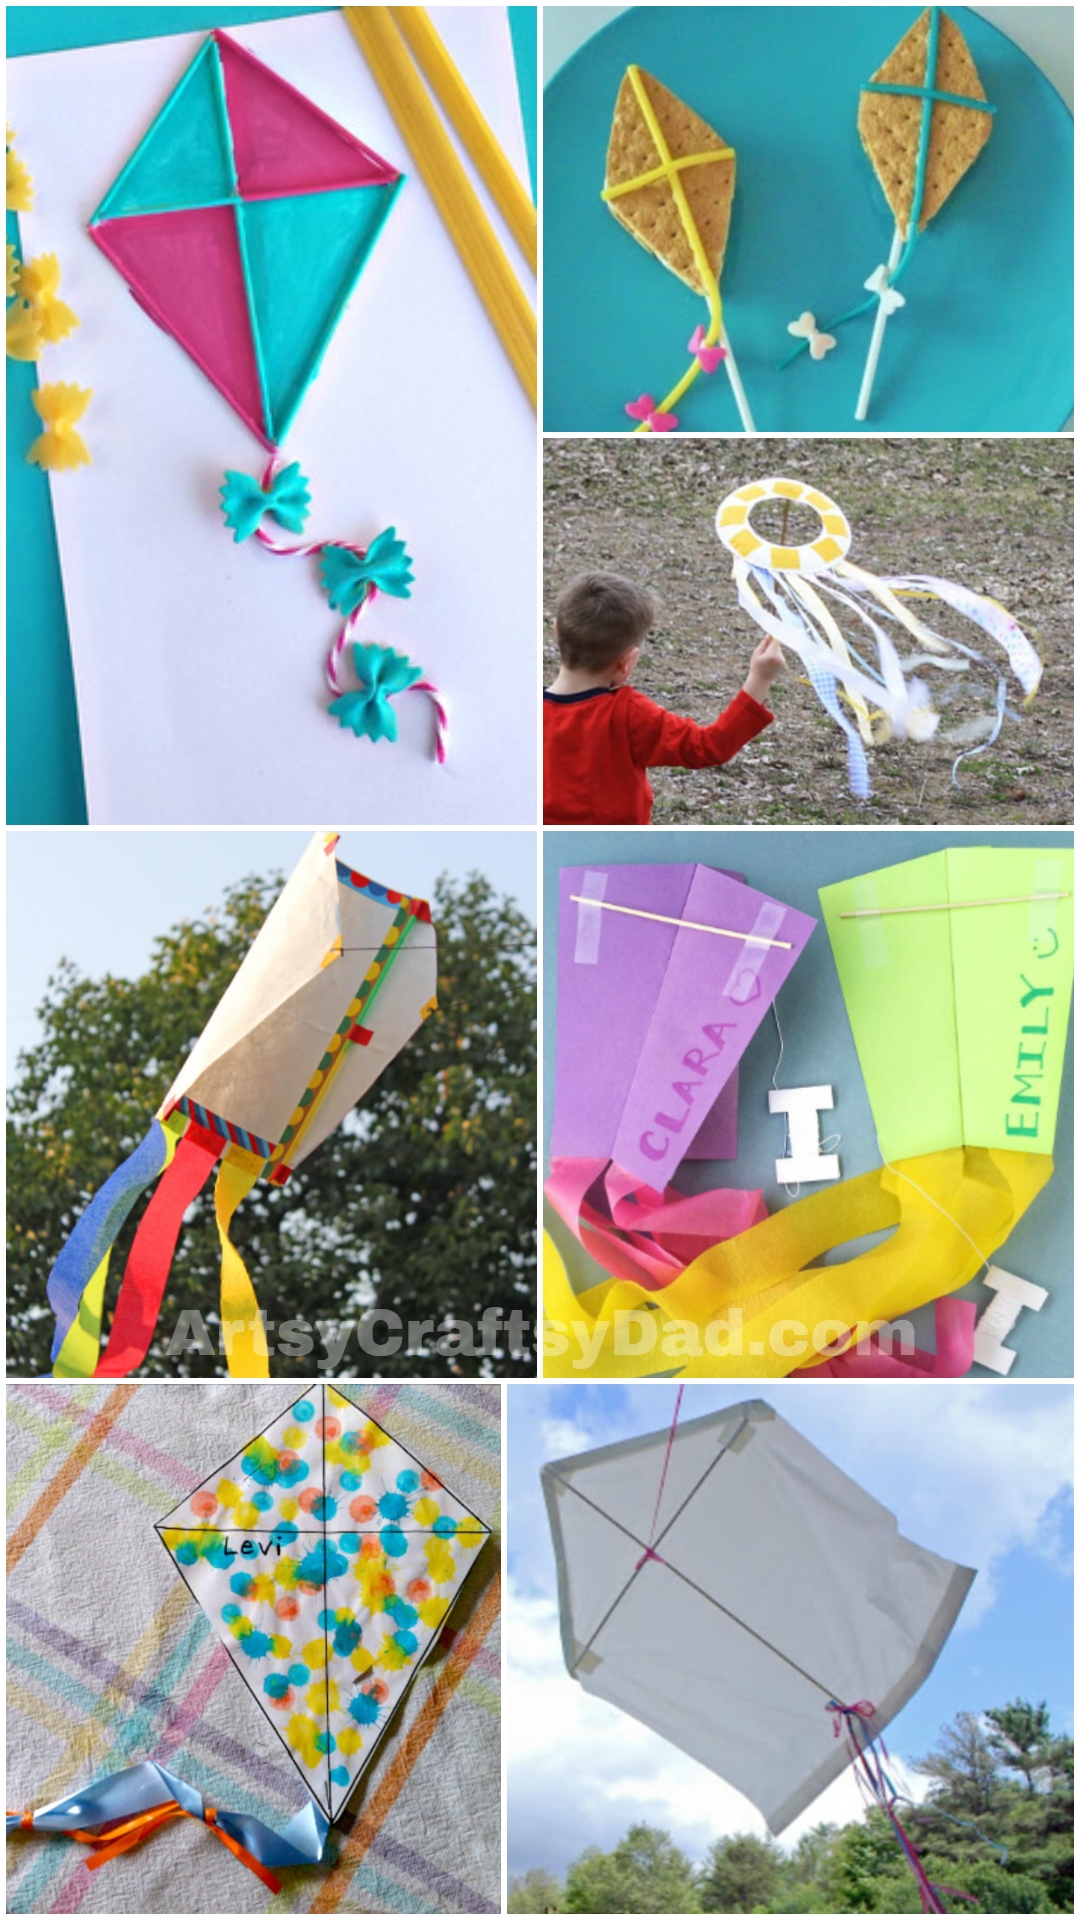 DIY Kite Activities For Preschoolers